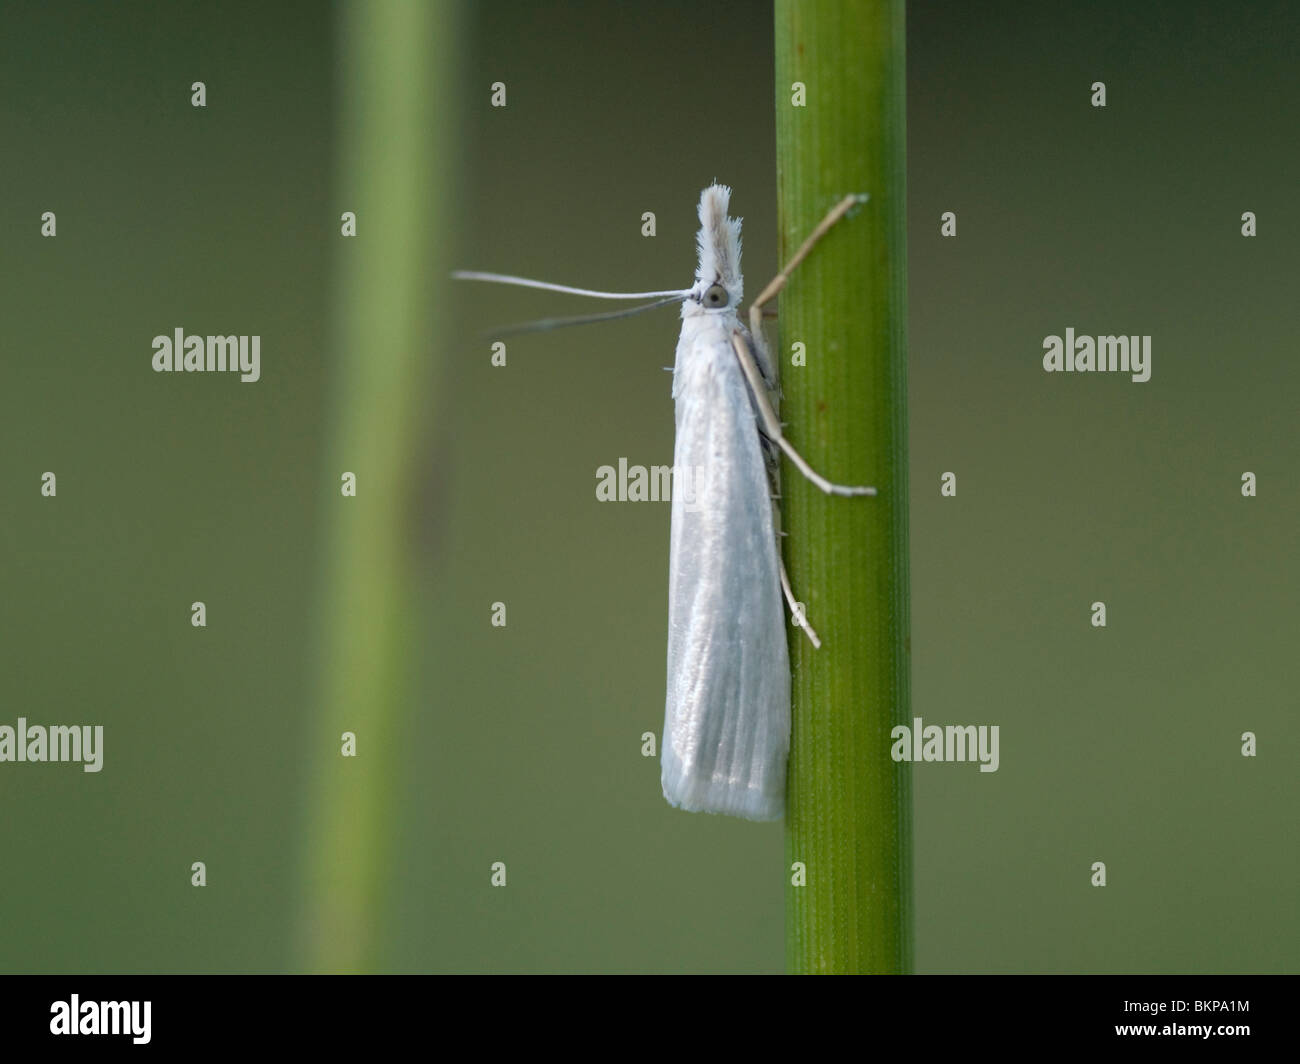 Een grasmot op een grasspriet,A Immaculate Grass-veneer Moth on a grass stem. Stock Photo